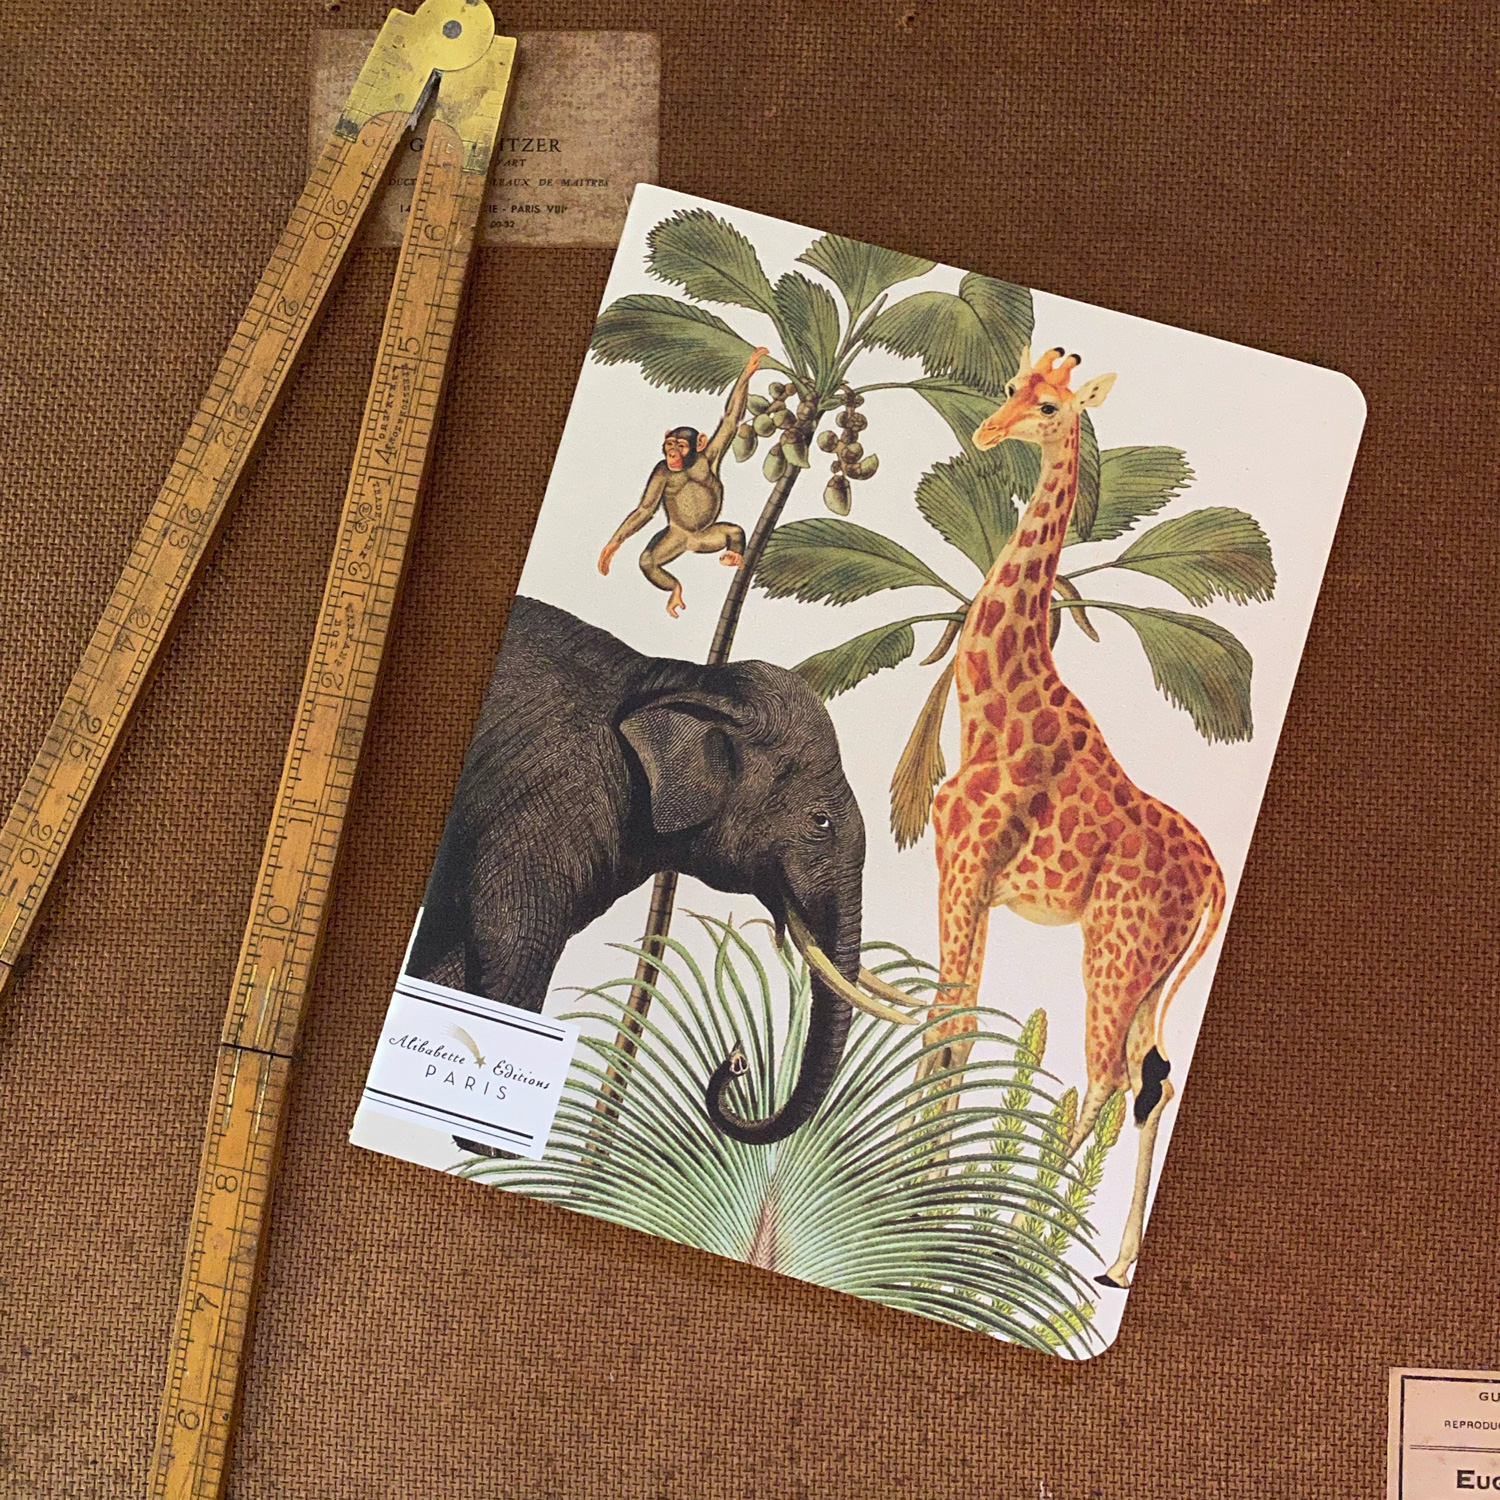 Heft " Paul et Virginie", A5, 17 x 22 cm, 64 Seiten von Alibabette-Editions , Giraffe & Elefant